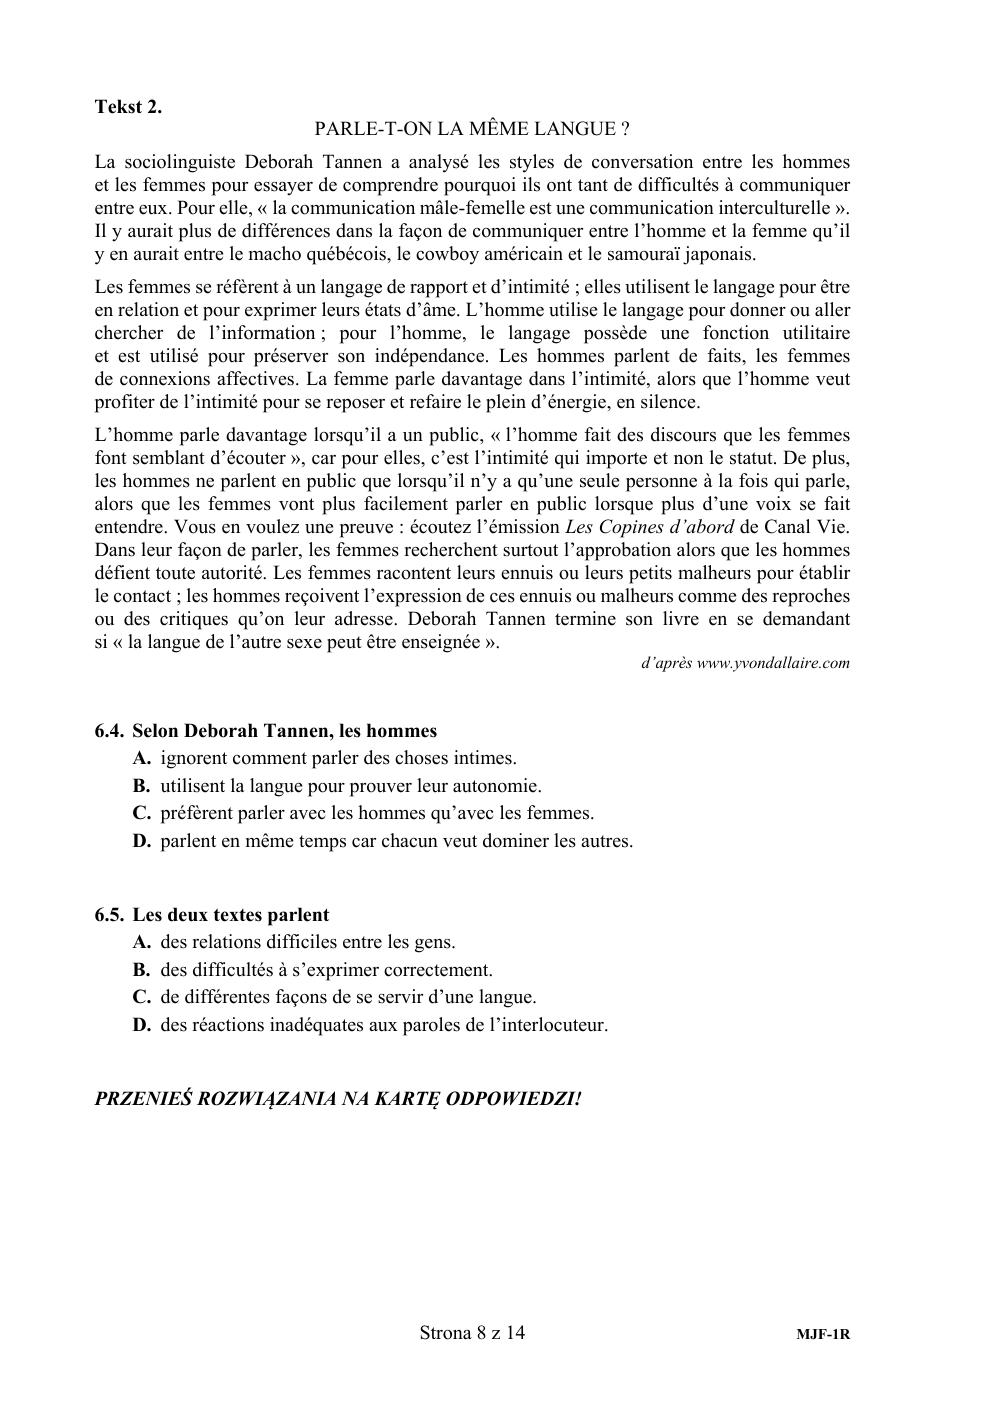 arkusz - język francuski rozszerzony - matura 2020-08